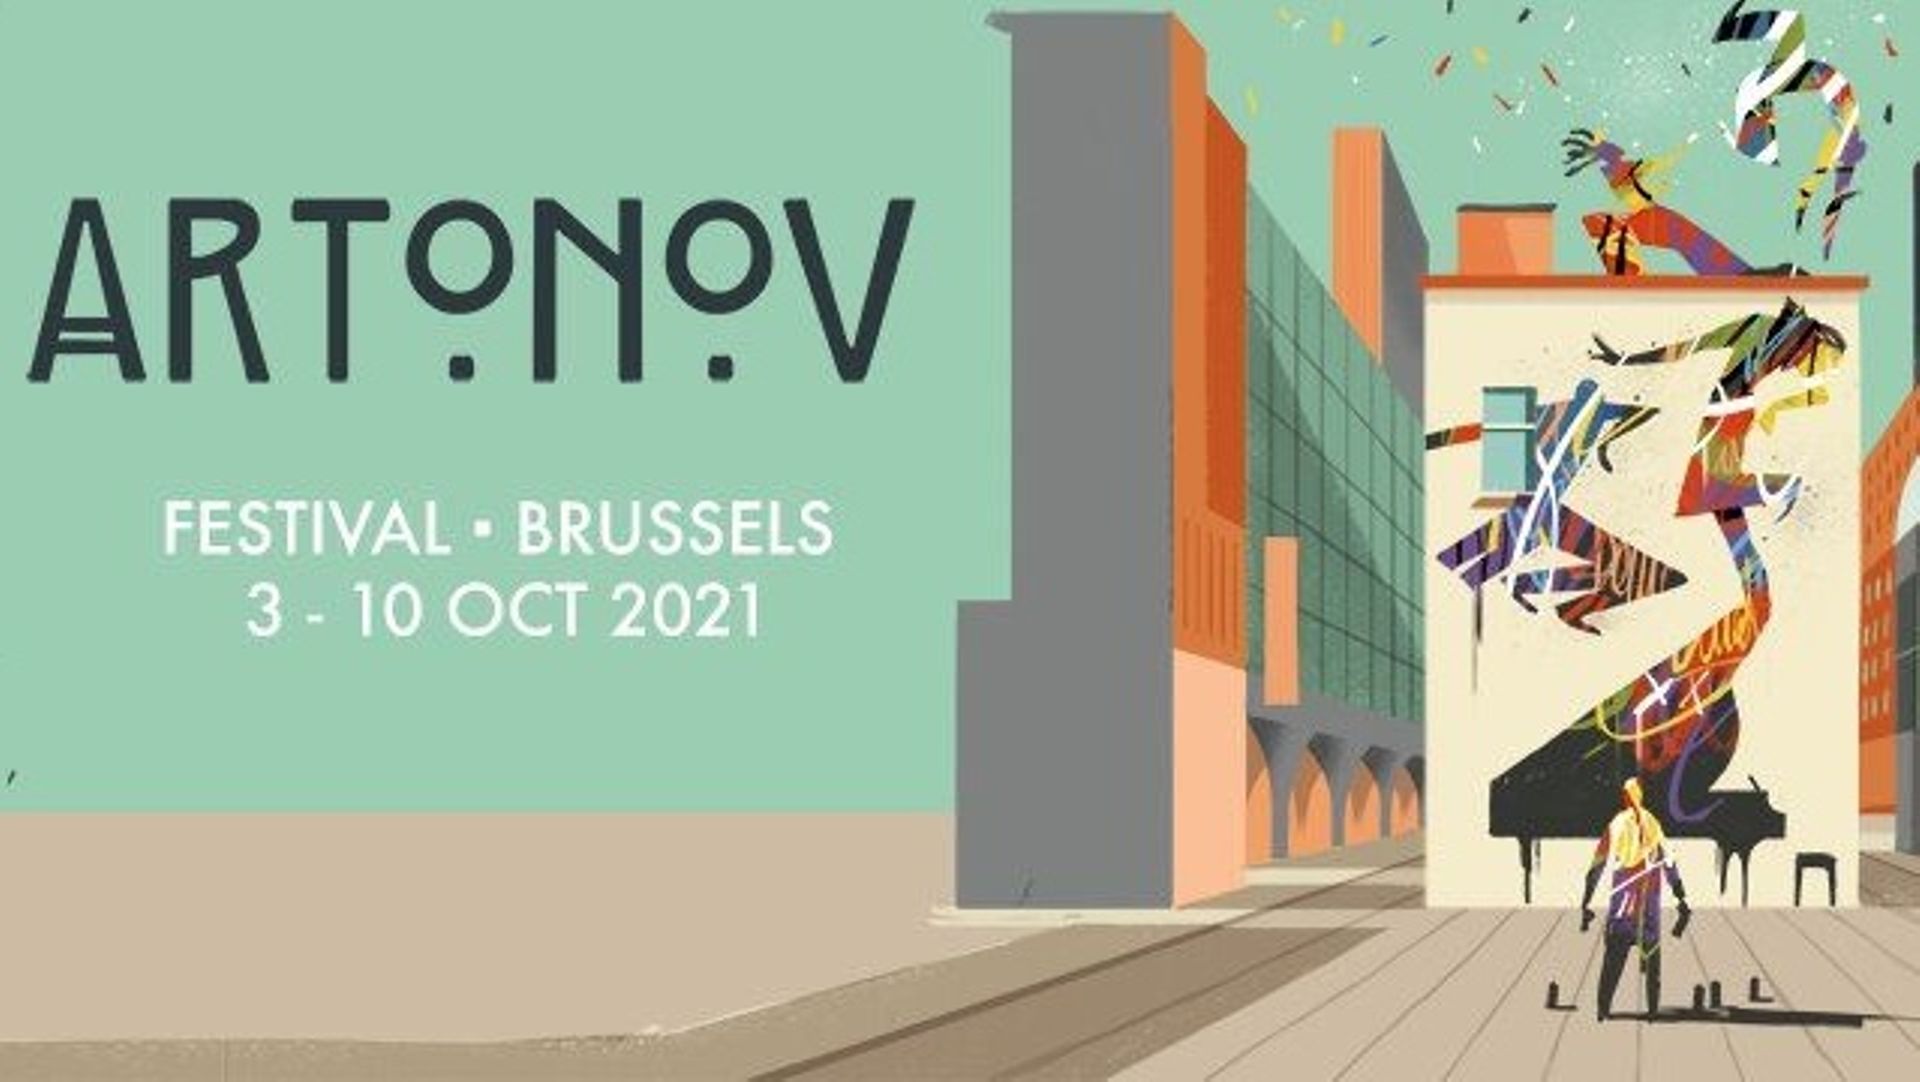 Le festival Artonov investira en octobre divers lieux bruxellois à l’architecture remarquable, pour sa 7e édition.